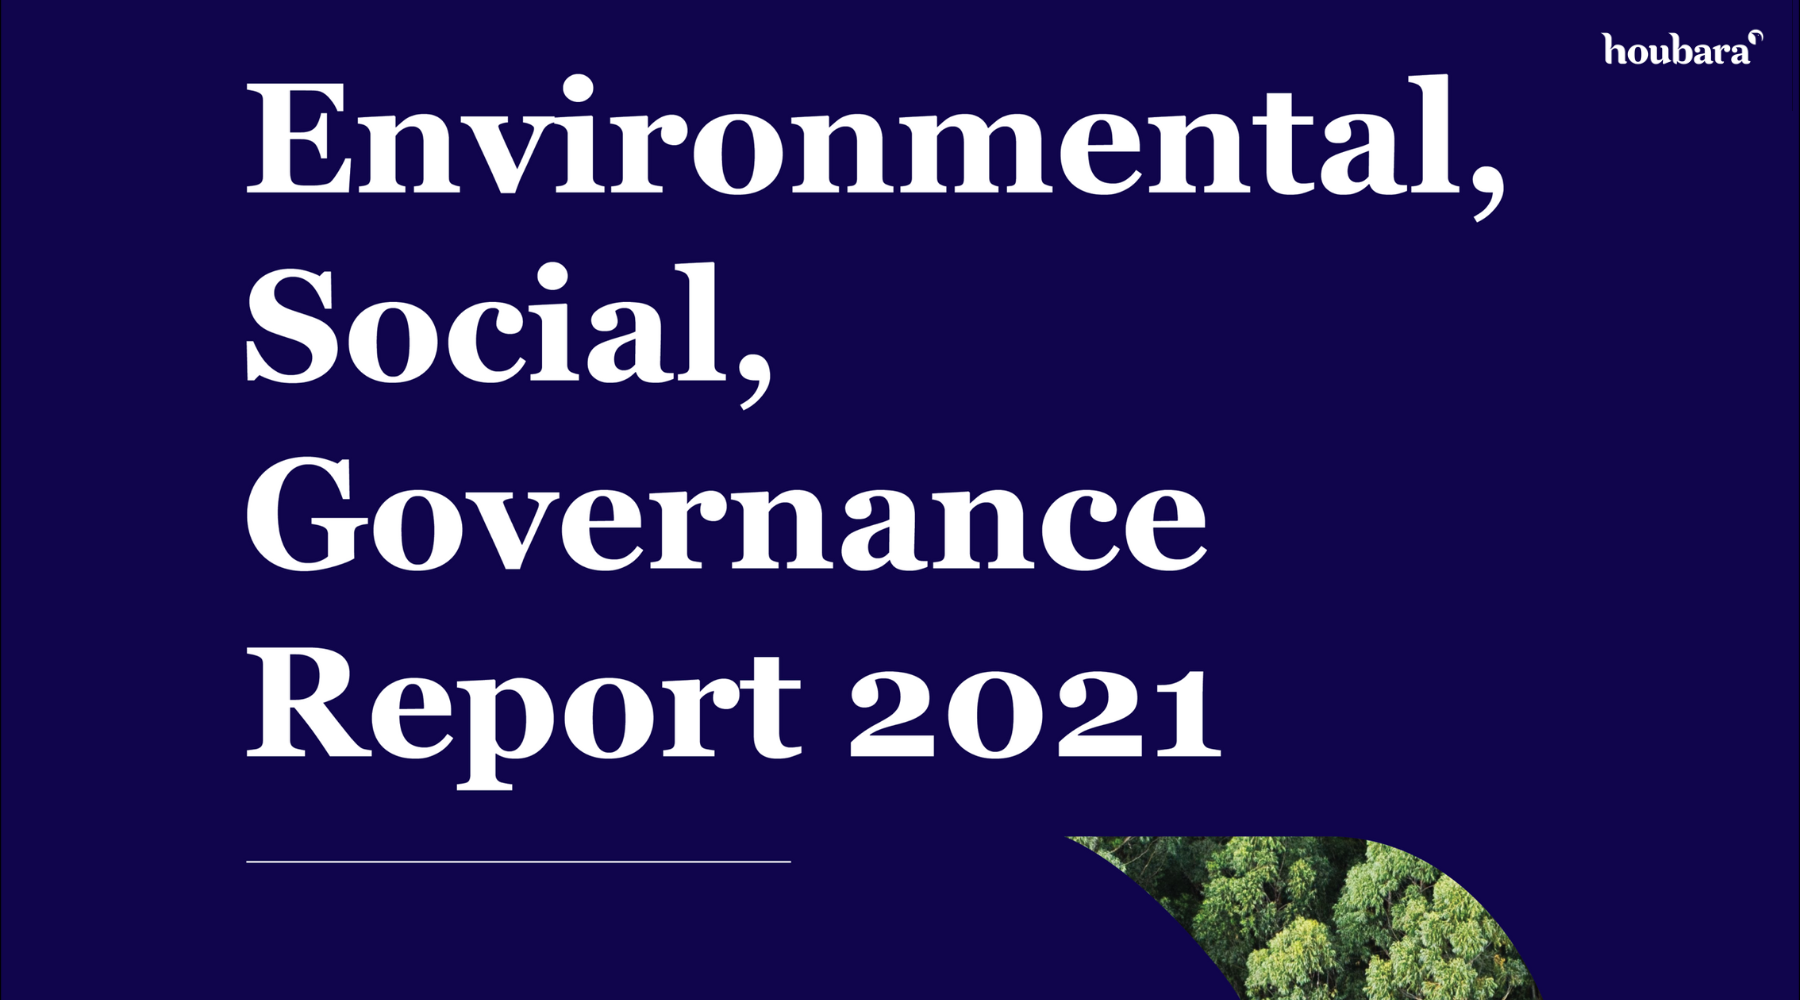 Houbara Launches Inaugural ESG Report